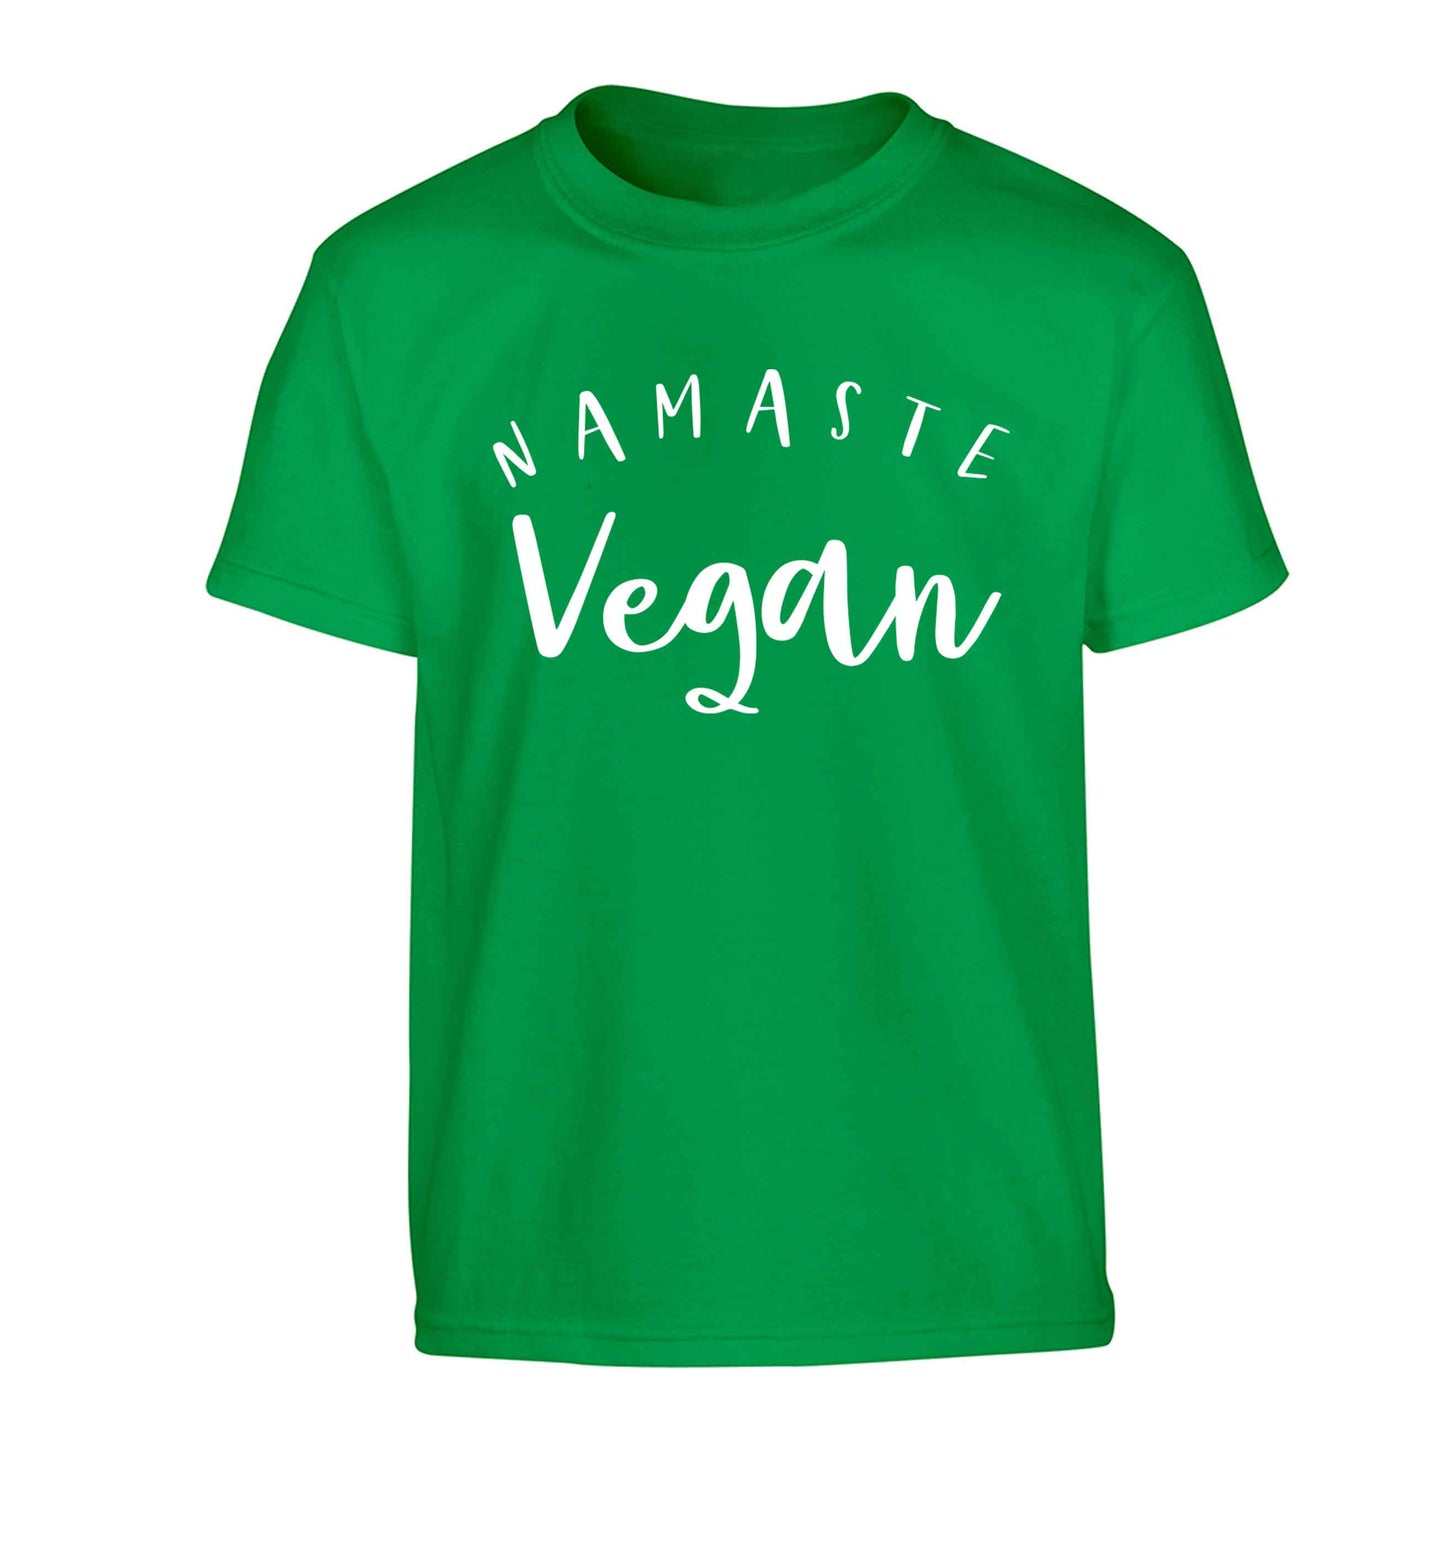 Namaste vegan Children's green Tshirt 12-13 Years